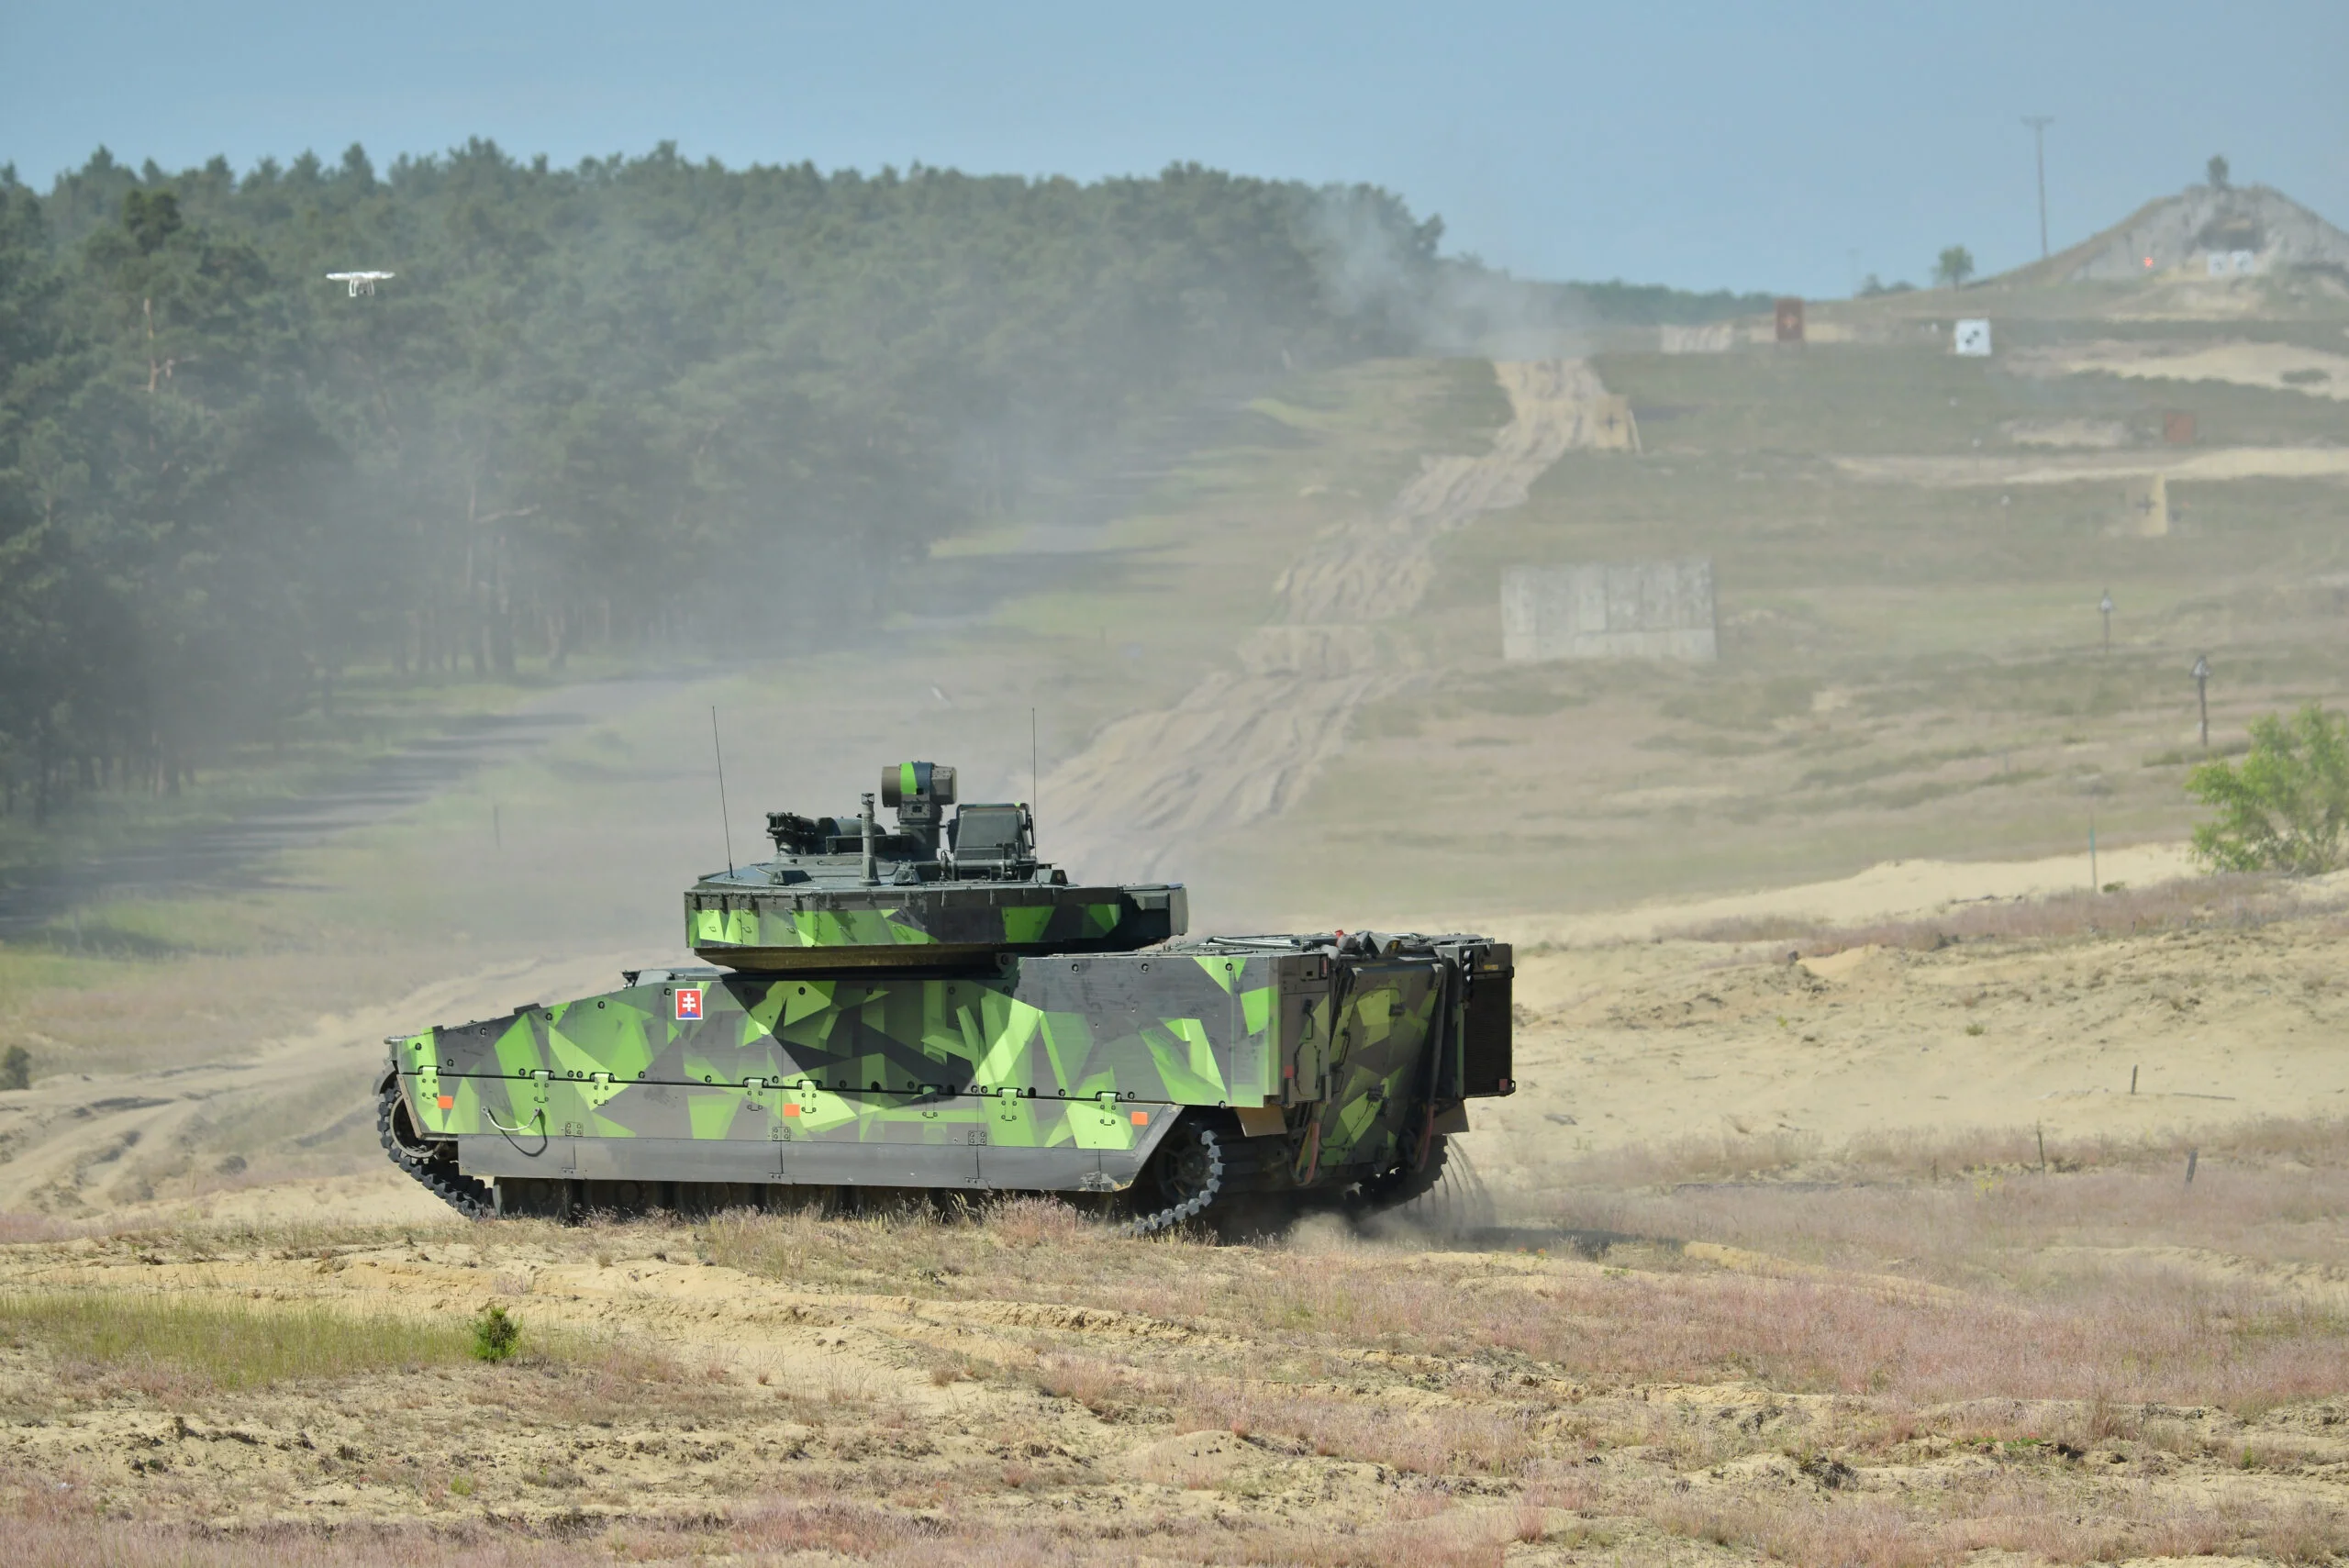 Encuentro Checo-Sueco define el futuro del vehículo CV90 MkIV